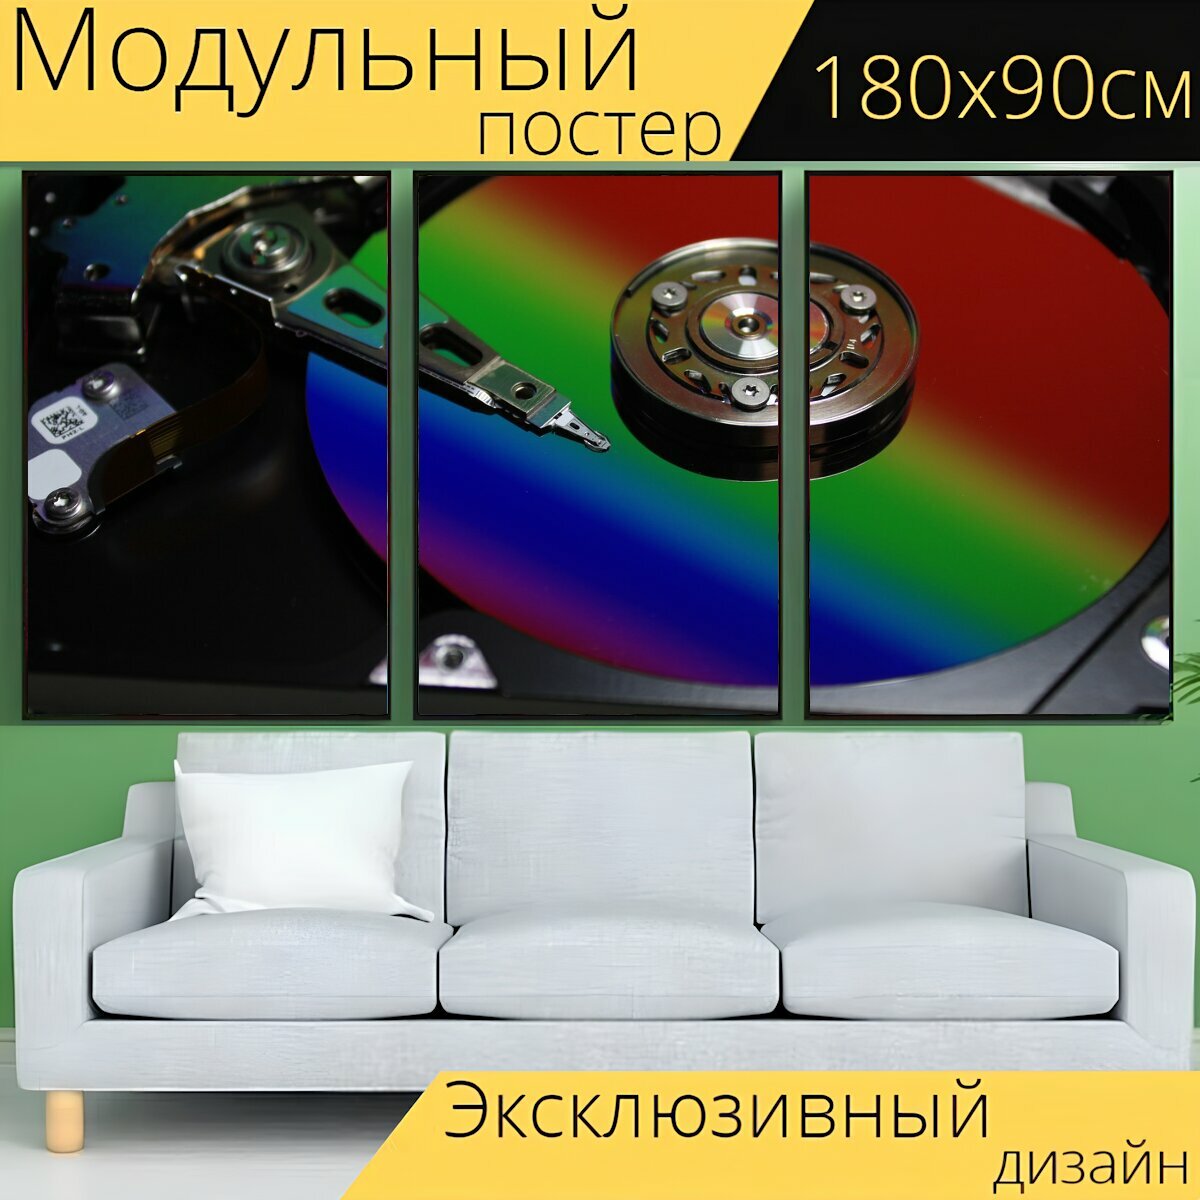 Модульный постер "Жесткий диск, диск, аппаратное обеспечение" 180 x 90 см. для интерьера